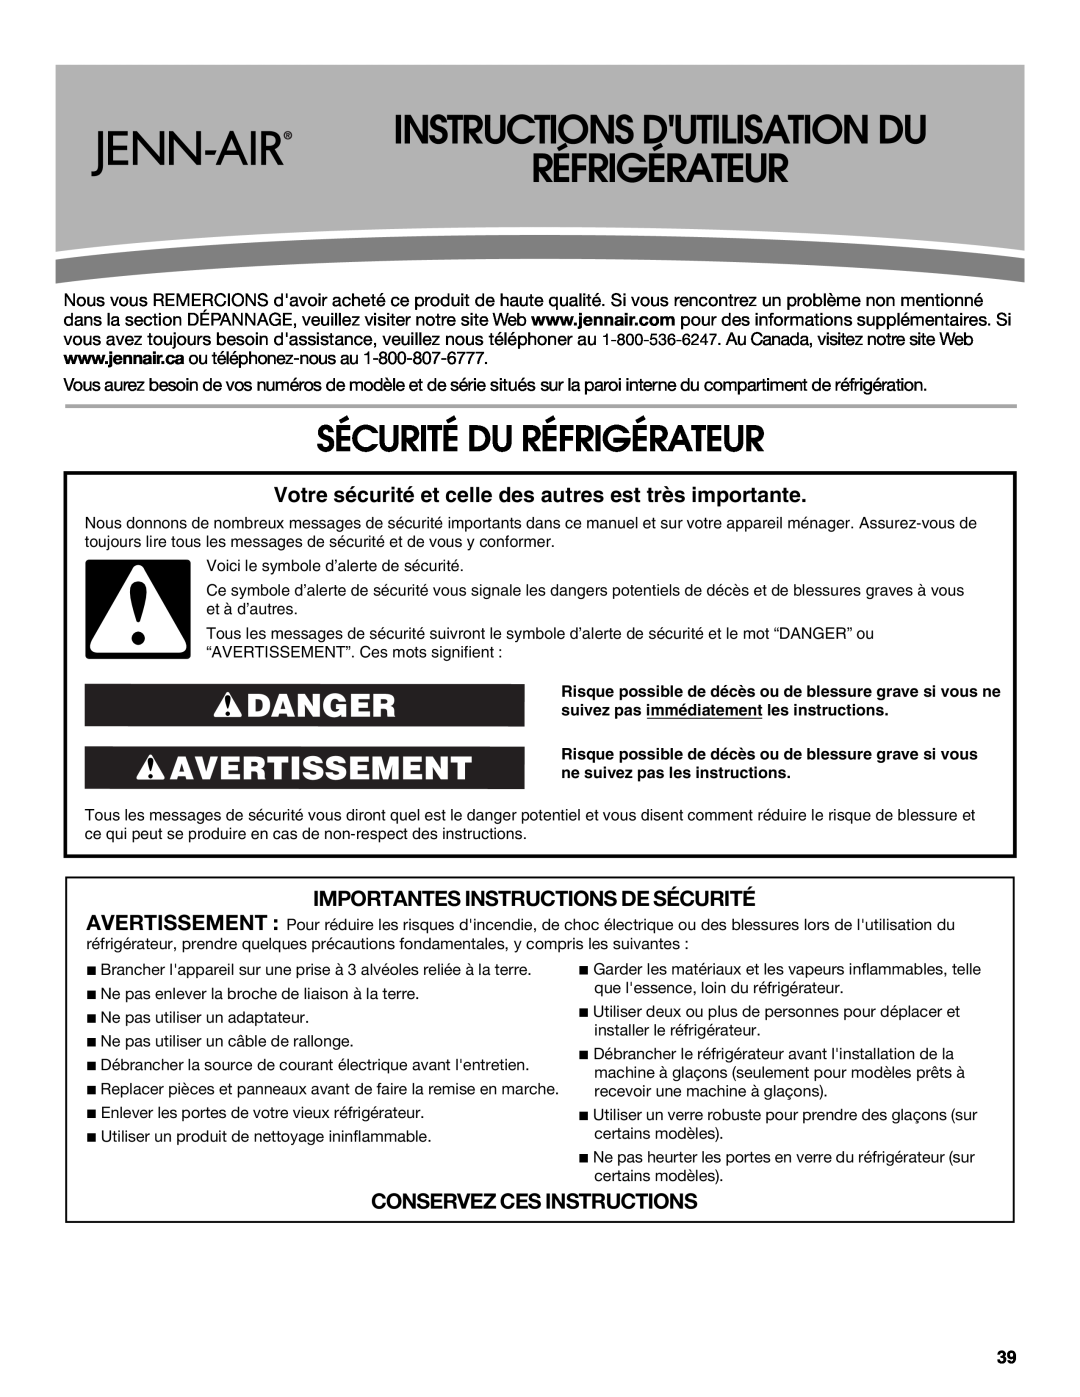 Jenn-Air W10329370A Instructions Dutilisation Du Réfrigérateur, Sécurité Du Réfrigérateur, Danger Avertissement 